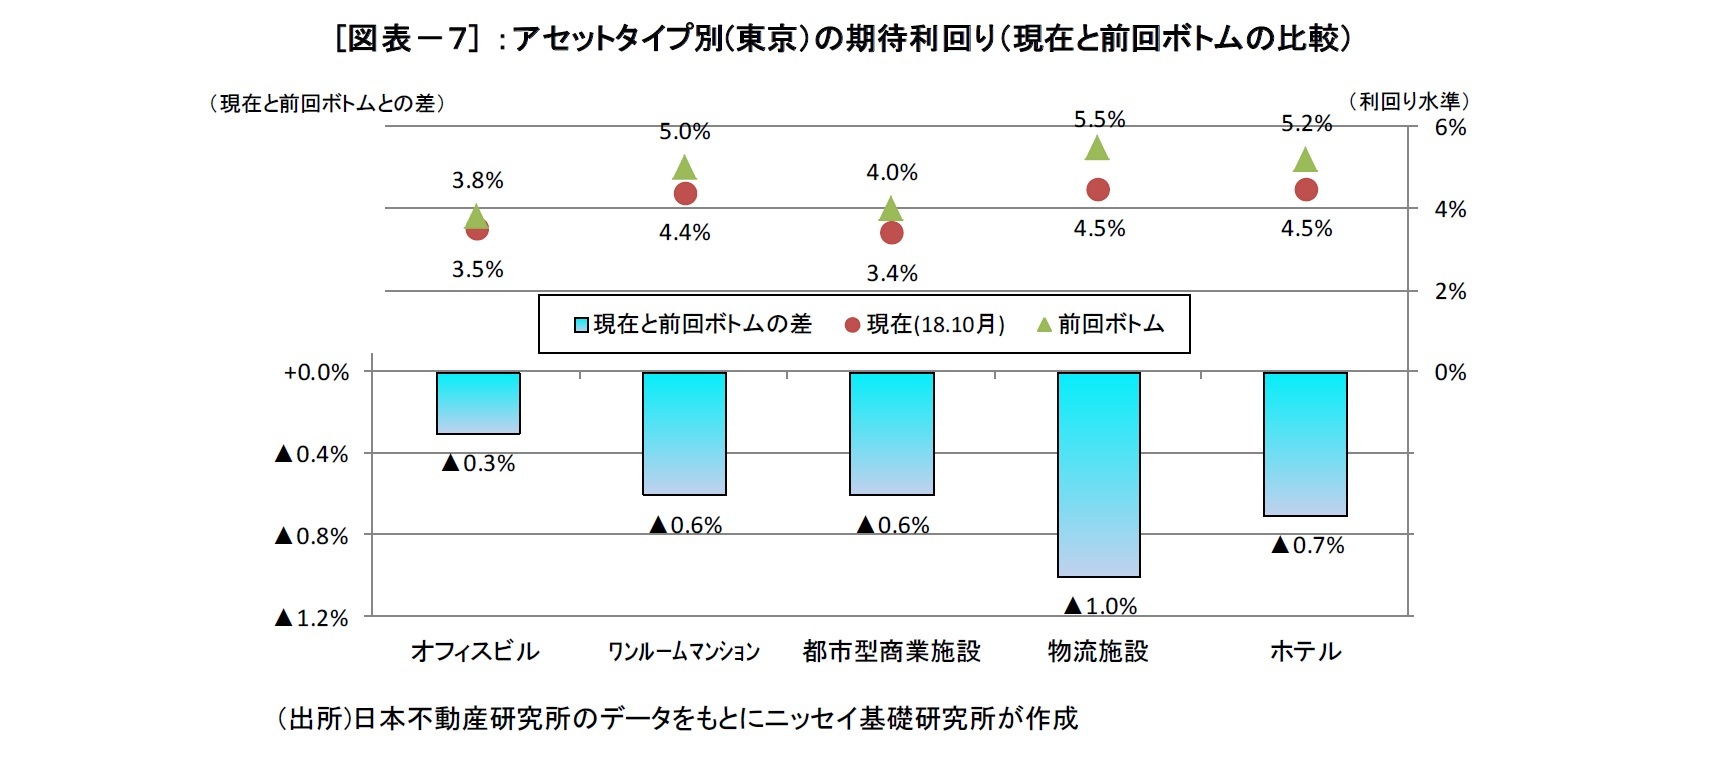 [図表－７] ：アセットタイプ別(東京）の期待利回り（現在と前回ボトムの比較）